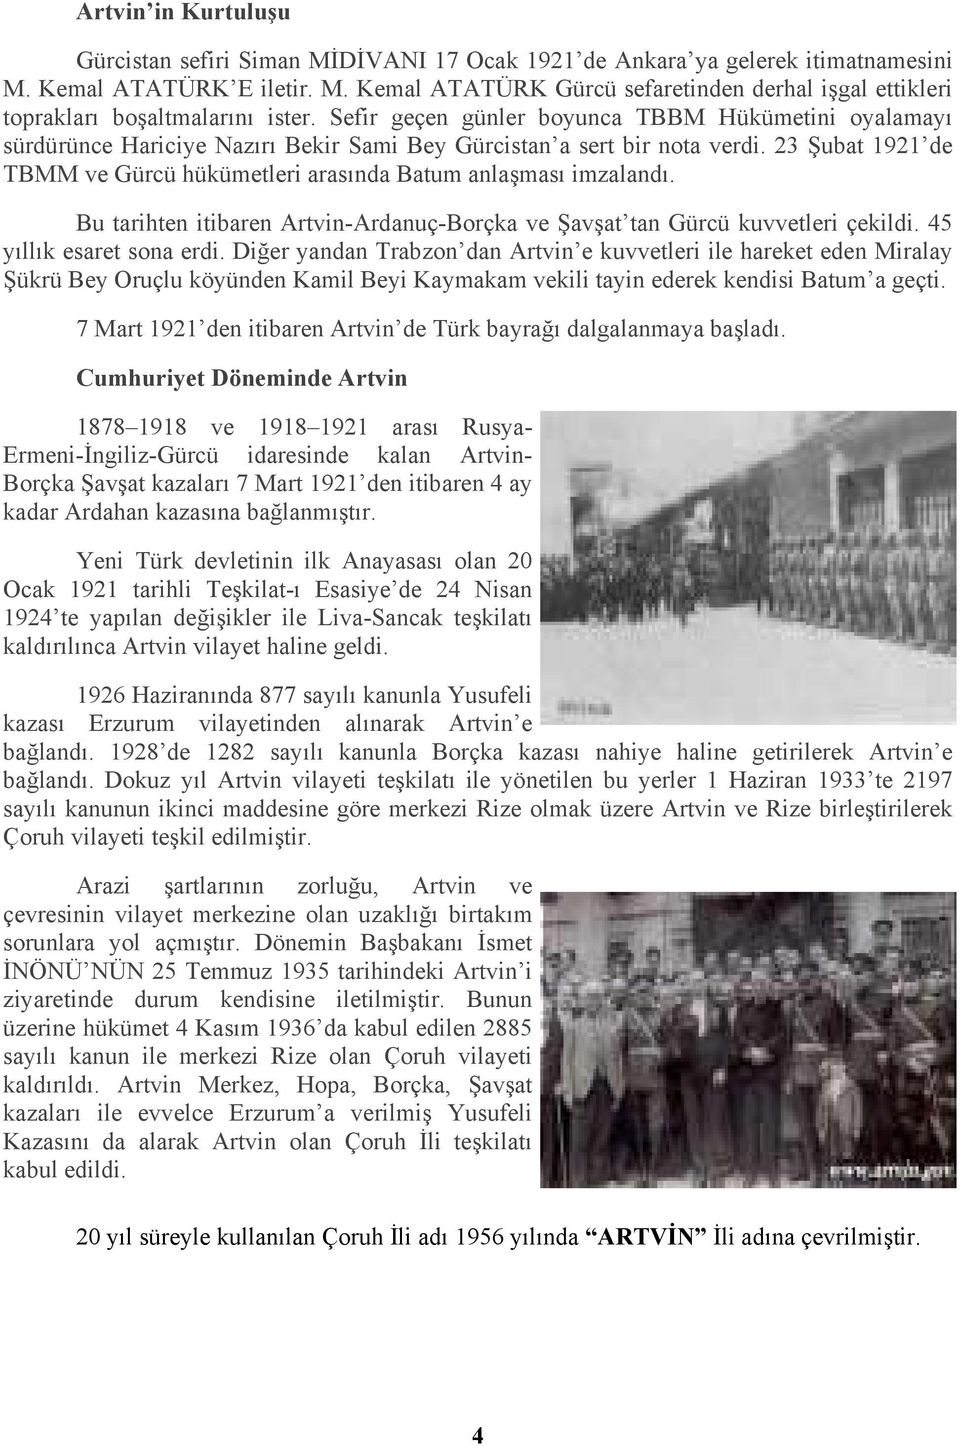 23 Şubat 1921 de TBMM ve Gürcü hükümetleri arasında Batum anlaşması imzalandı. Bu tarihten itibaren Artvin-Ardanuç-Borçka ve Şavşat tan Gürcü kuvvetleri çekildi. 45 yıllık esaret sona erdi.